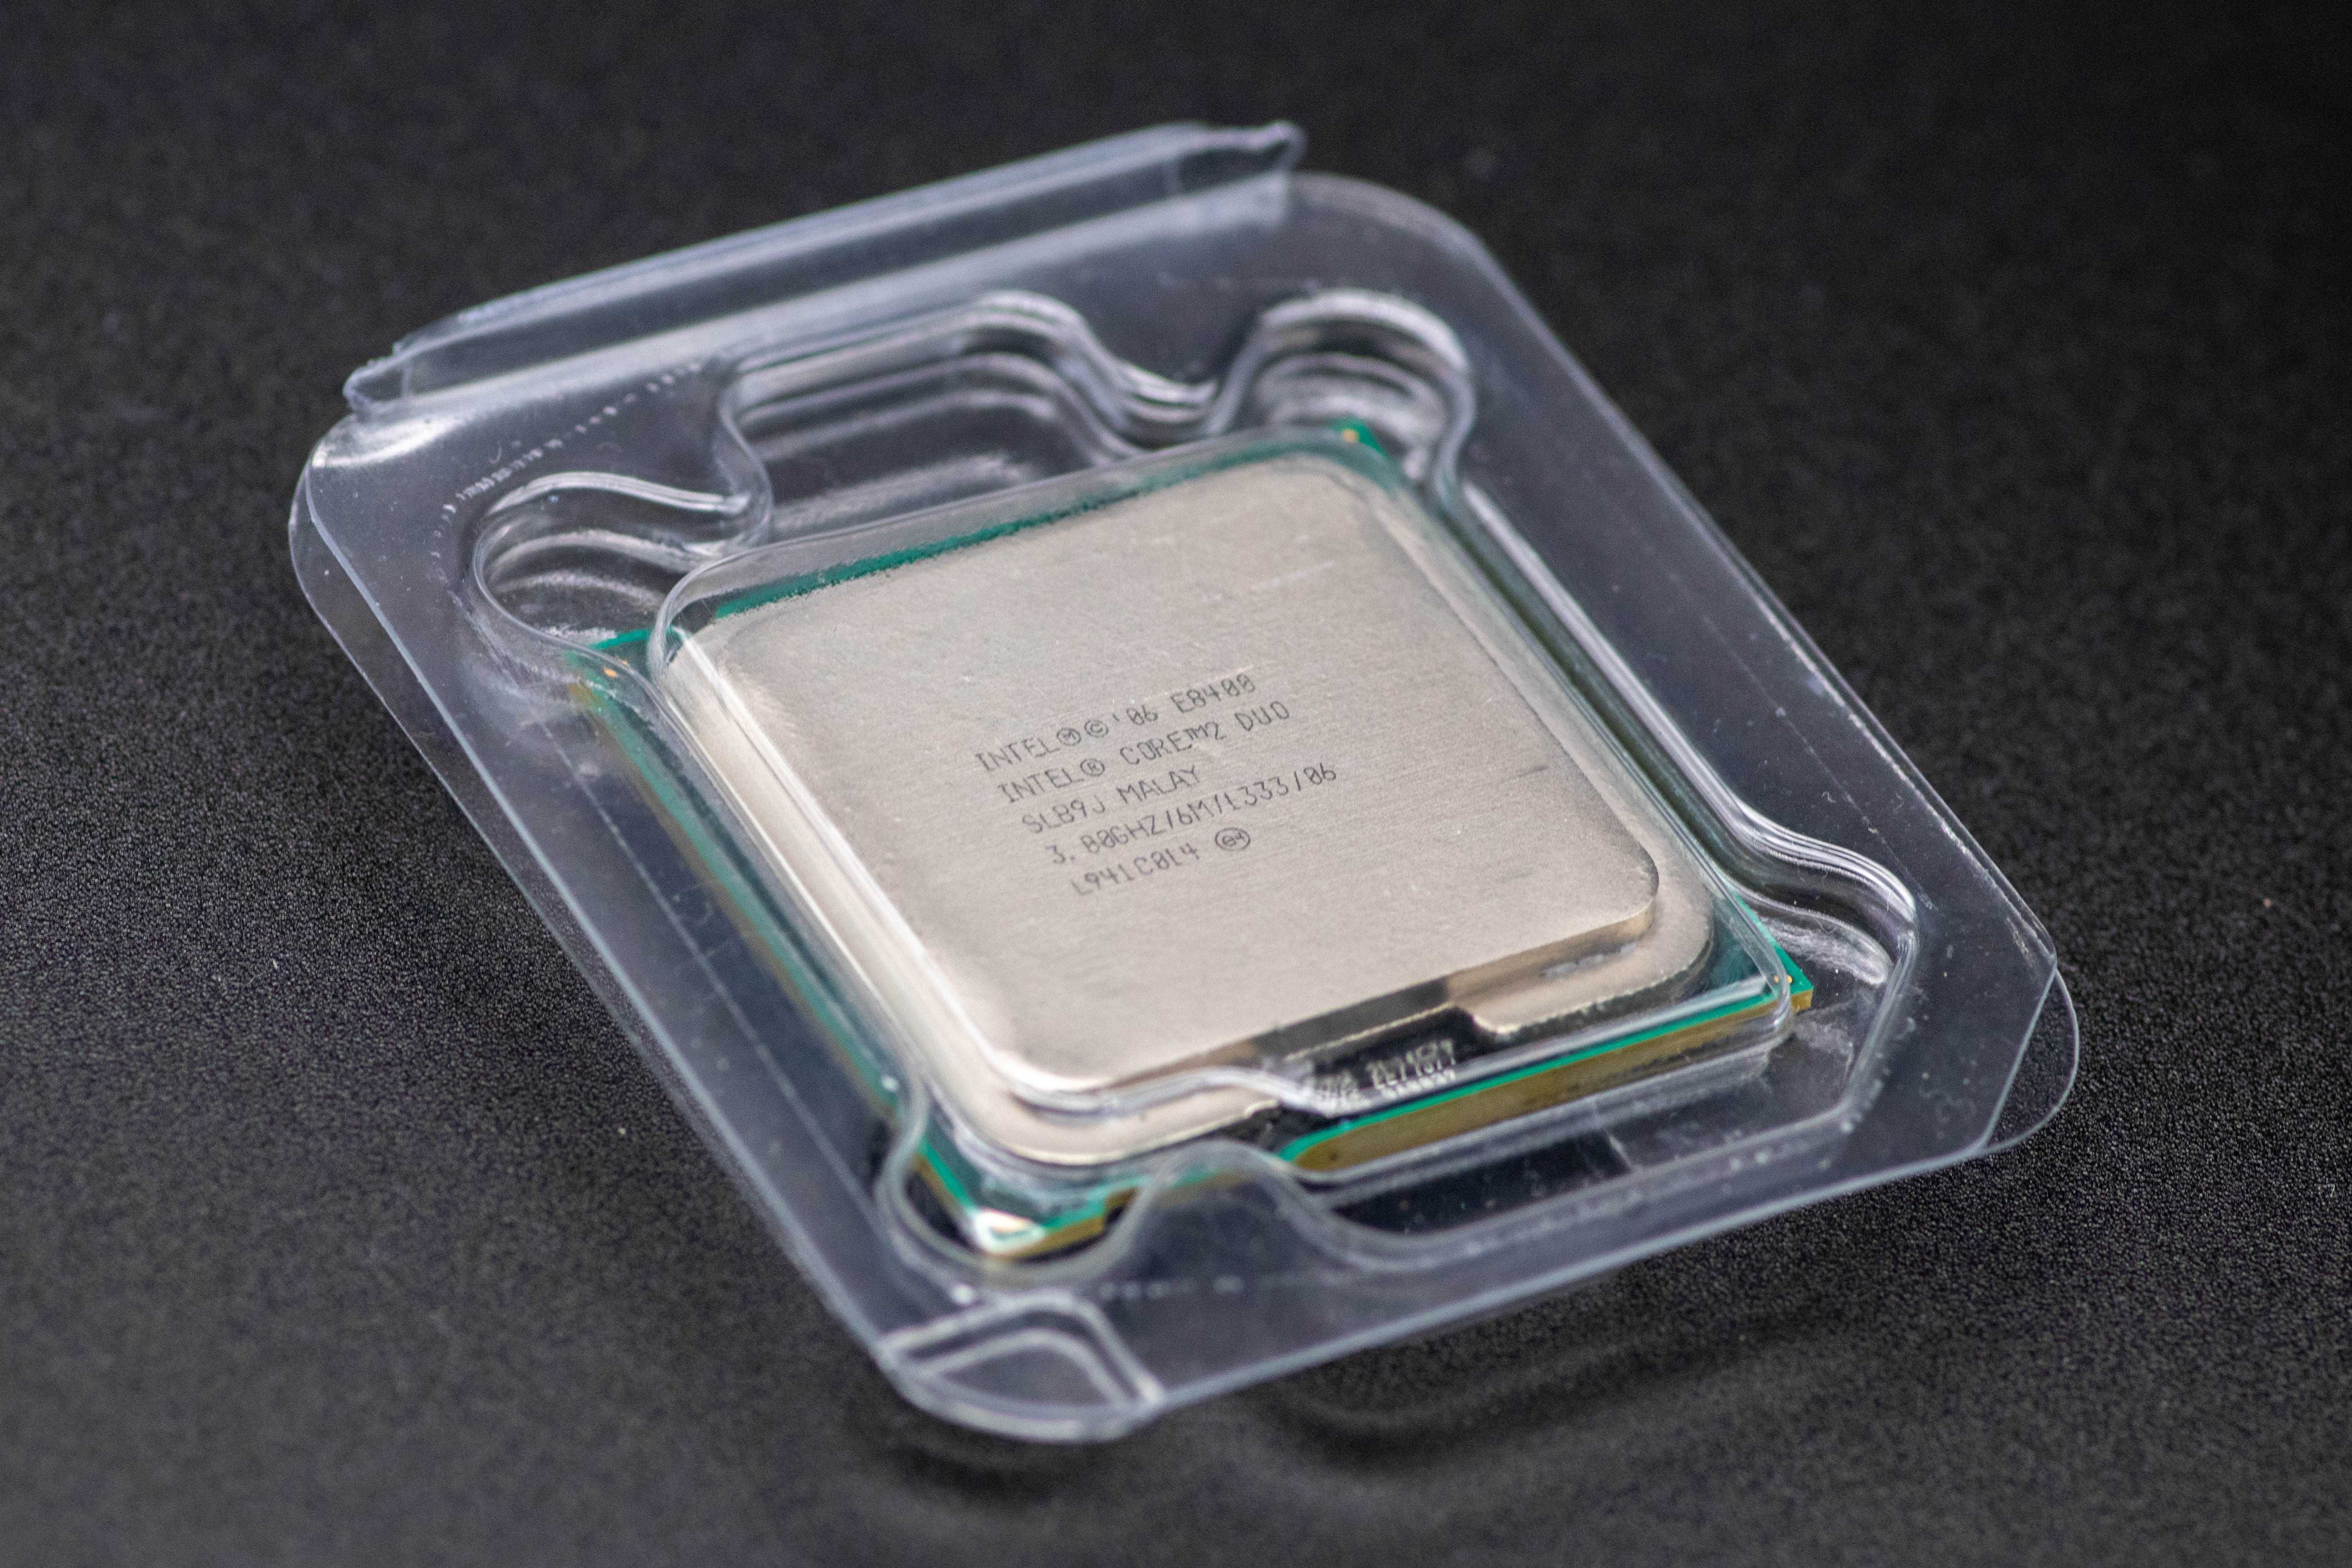 Motherboard Acer C/ Intel Quad 2 Quad Q9650 8gb Ram